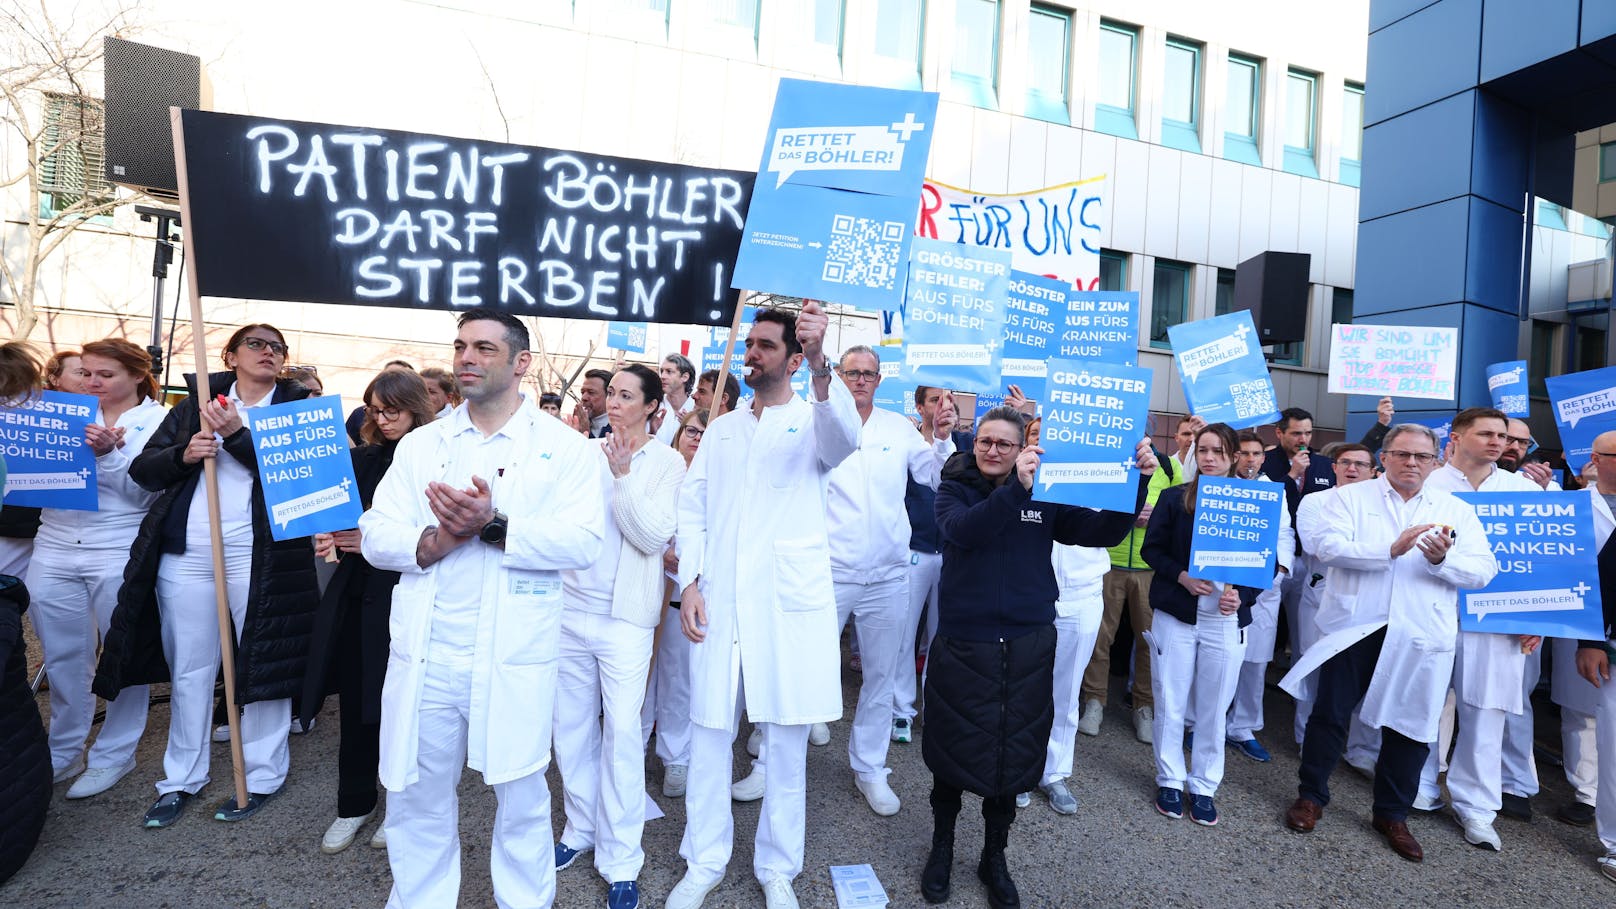 Jetzt soll Petition das Böhler-Spital retten